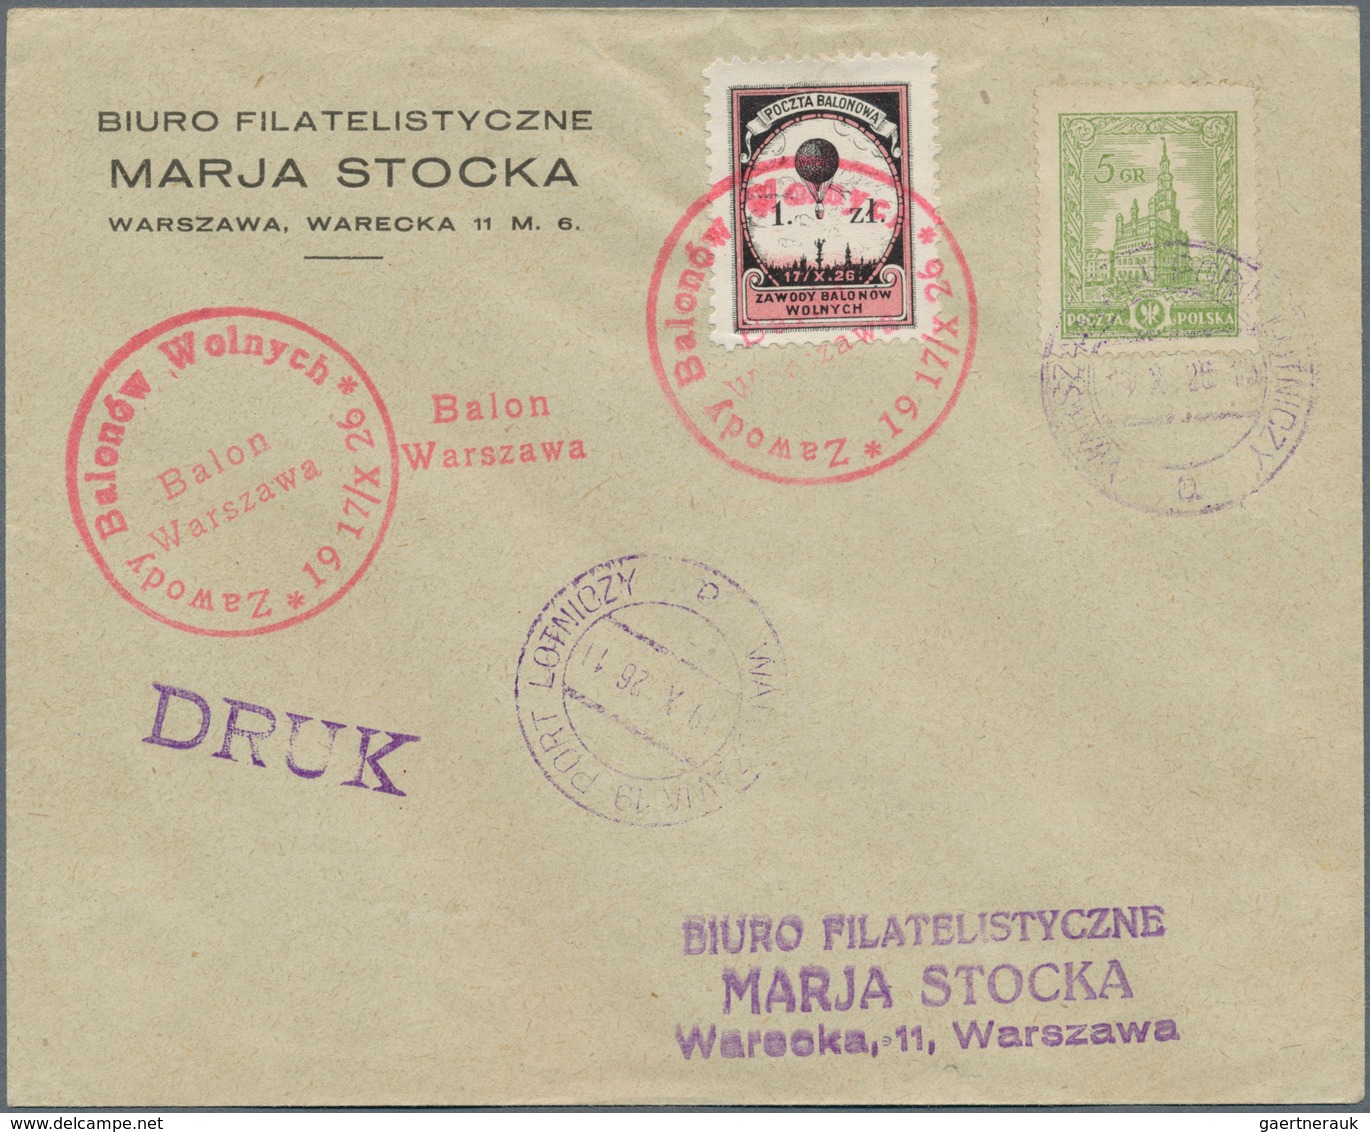 Polen - Besonderheiten: 1926, 19.X., Poland, four balloon covers/cards "Poznań", "Lwów", "Kraków" an